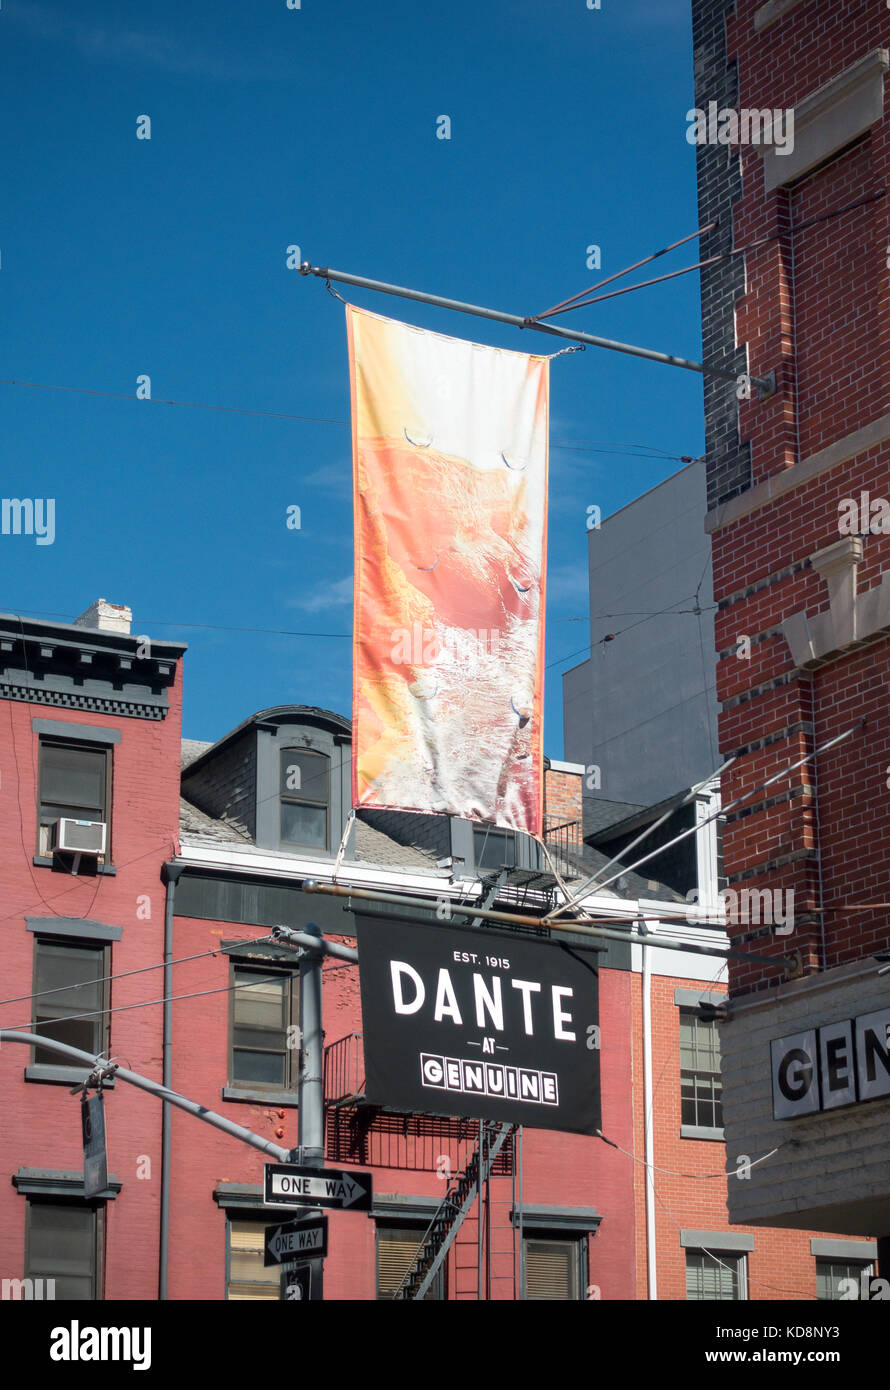 Dante im Genuine, einer Cocktailbar in Little Italy Stockfoto